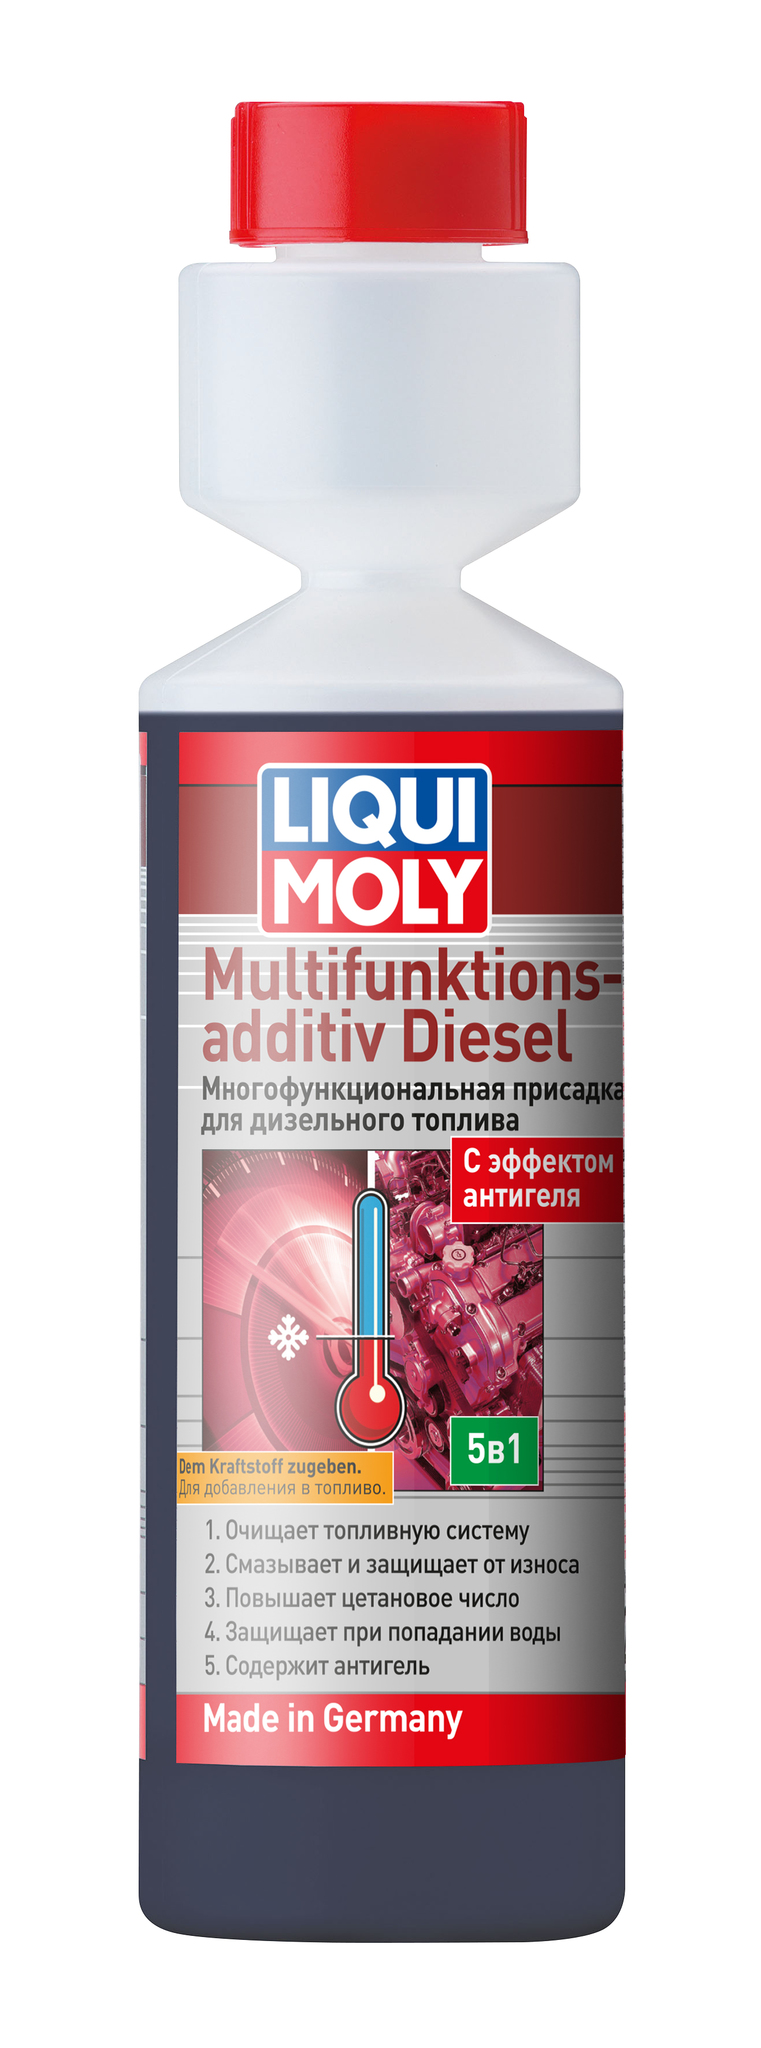 Liqui Moly Multifunktionsadditiv Diesel Многофункциональная дизельная присадка